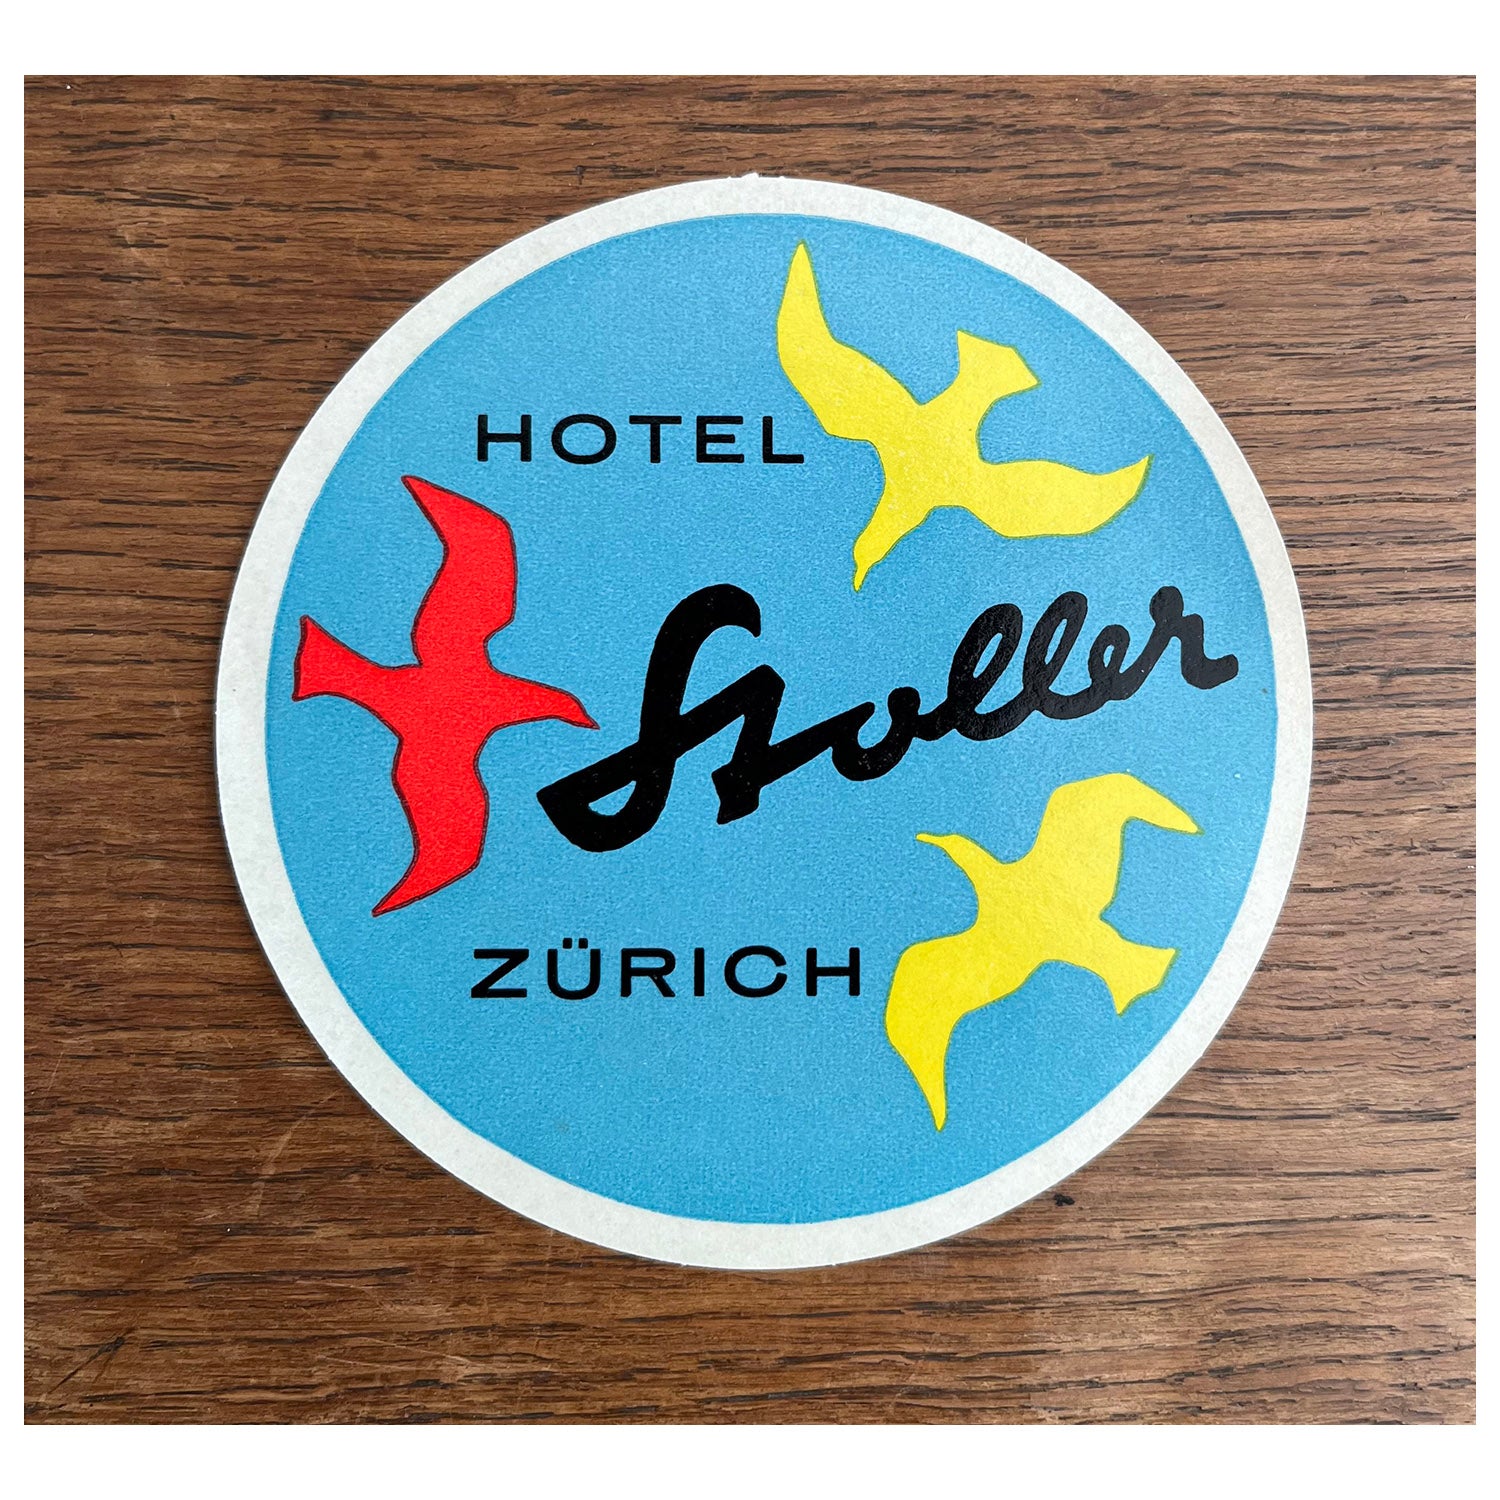 Hotel Stoller, Zurich (luggage label)